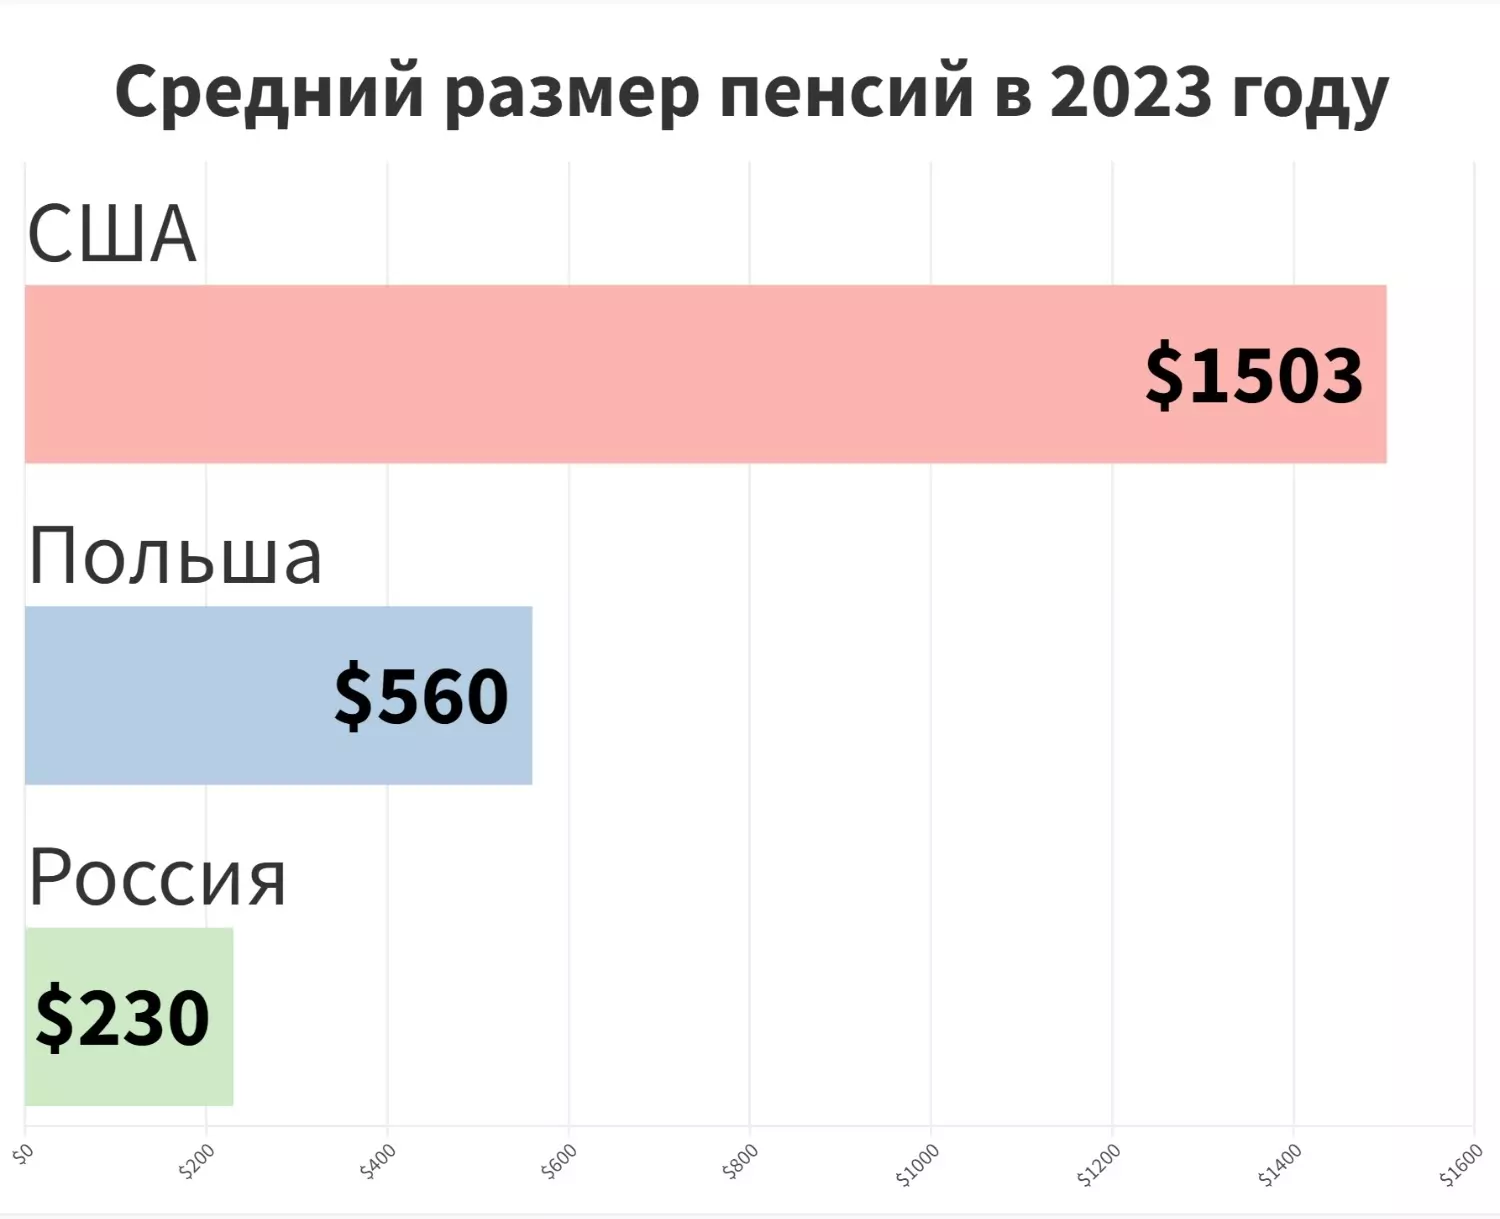 Средний размер пенсий в России, США и Польше